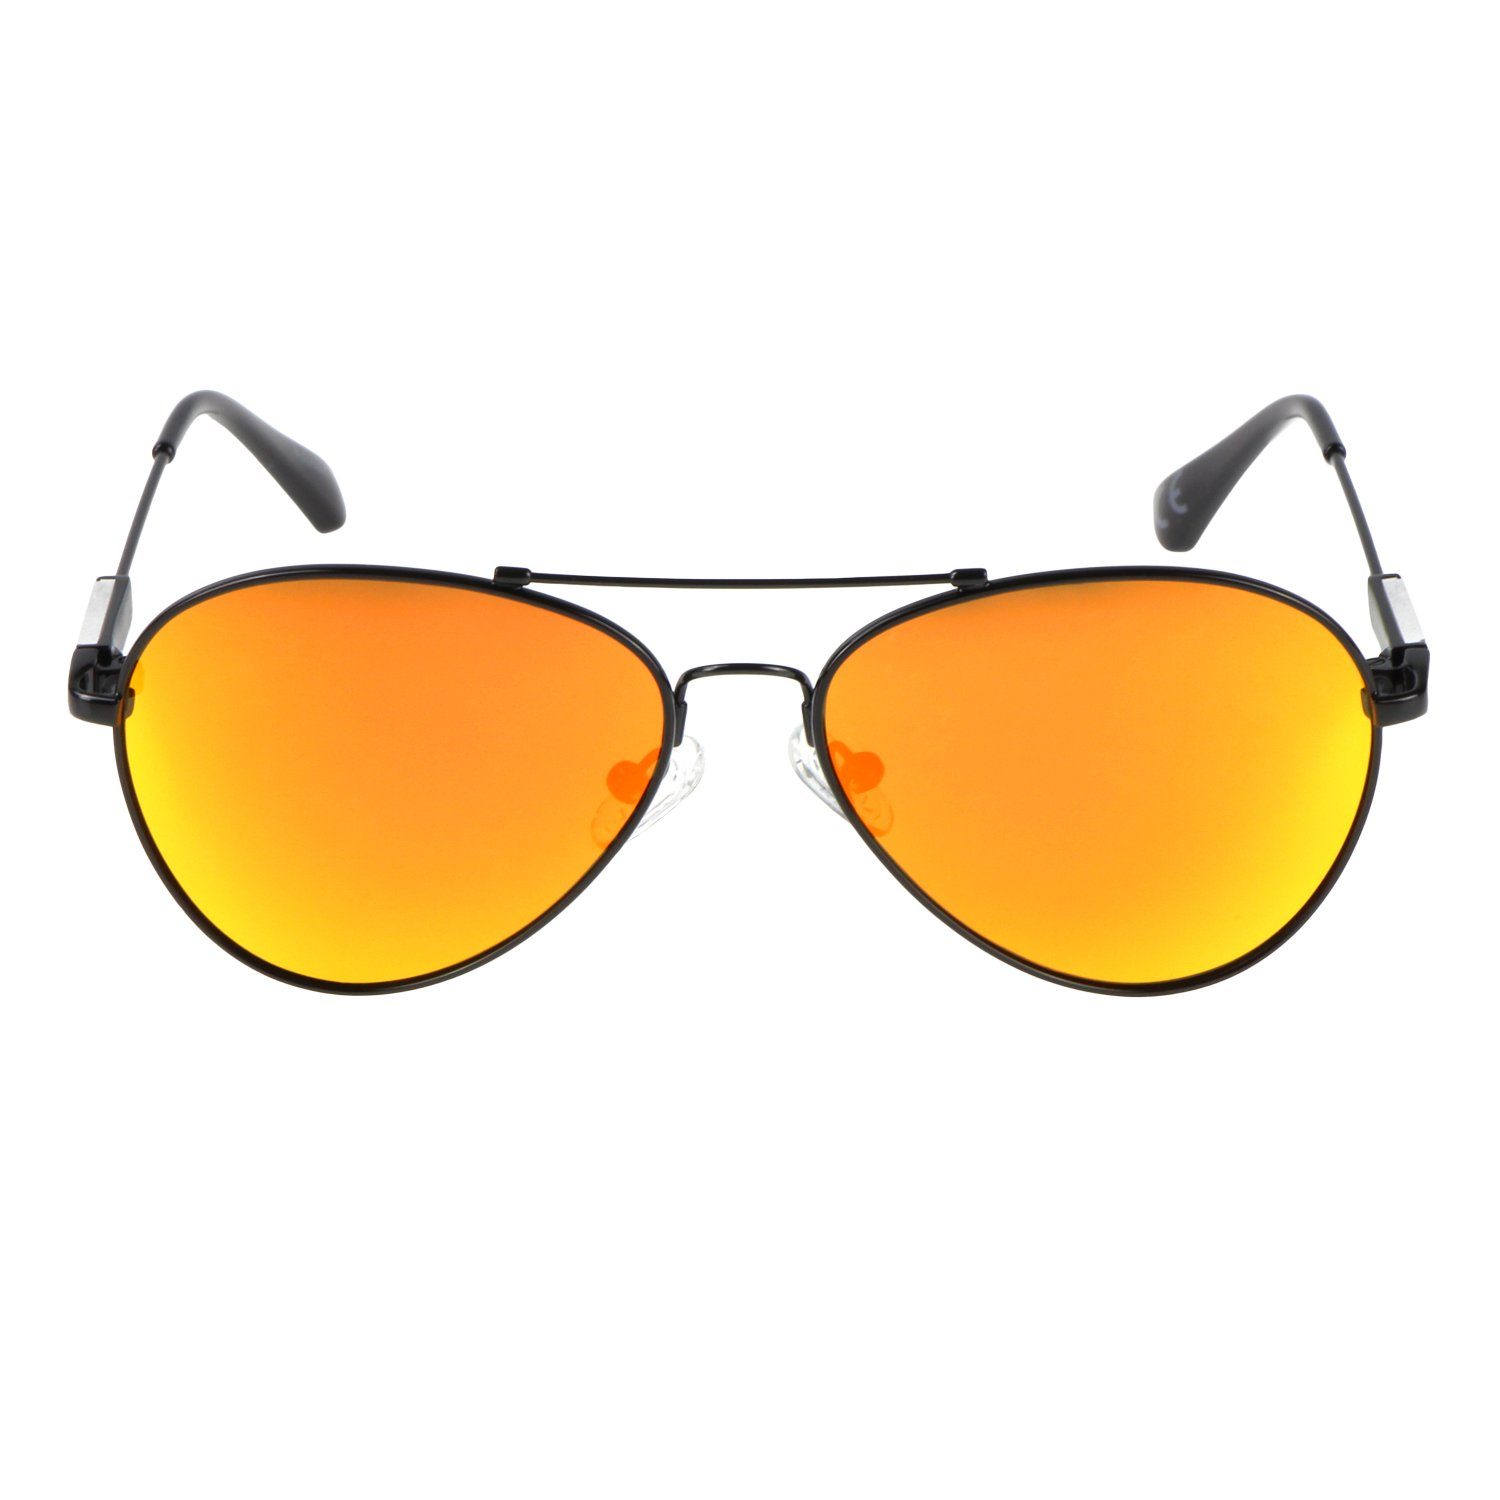 ActiveSol SUNGLASSES Brillenputztuch Memory Flieger-Brille Pilotenbrille 10 (inklusive Kinder, Metall Metall - Sonnenbrille Schwarz im Nasenbügel Bügel - für 6 Schiebeschachtel) Verspiegelt und Jahre, Orange mit